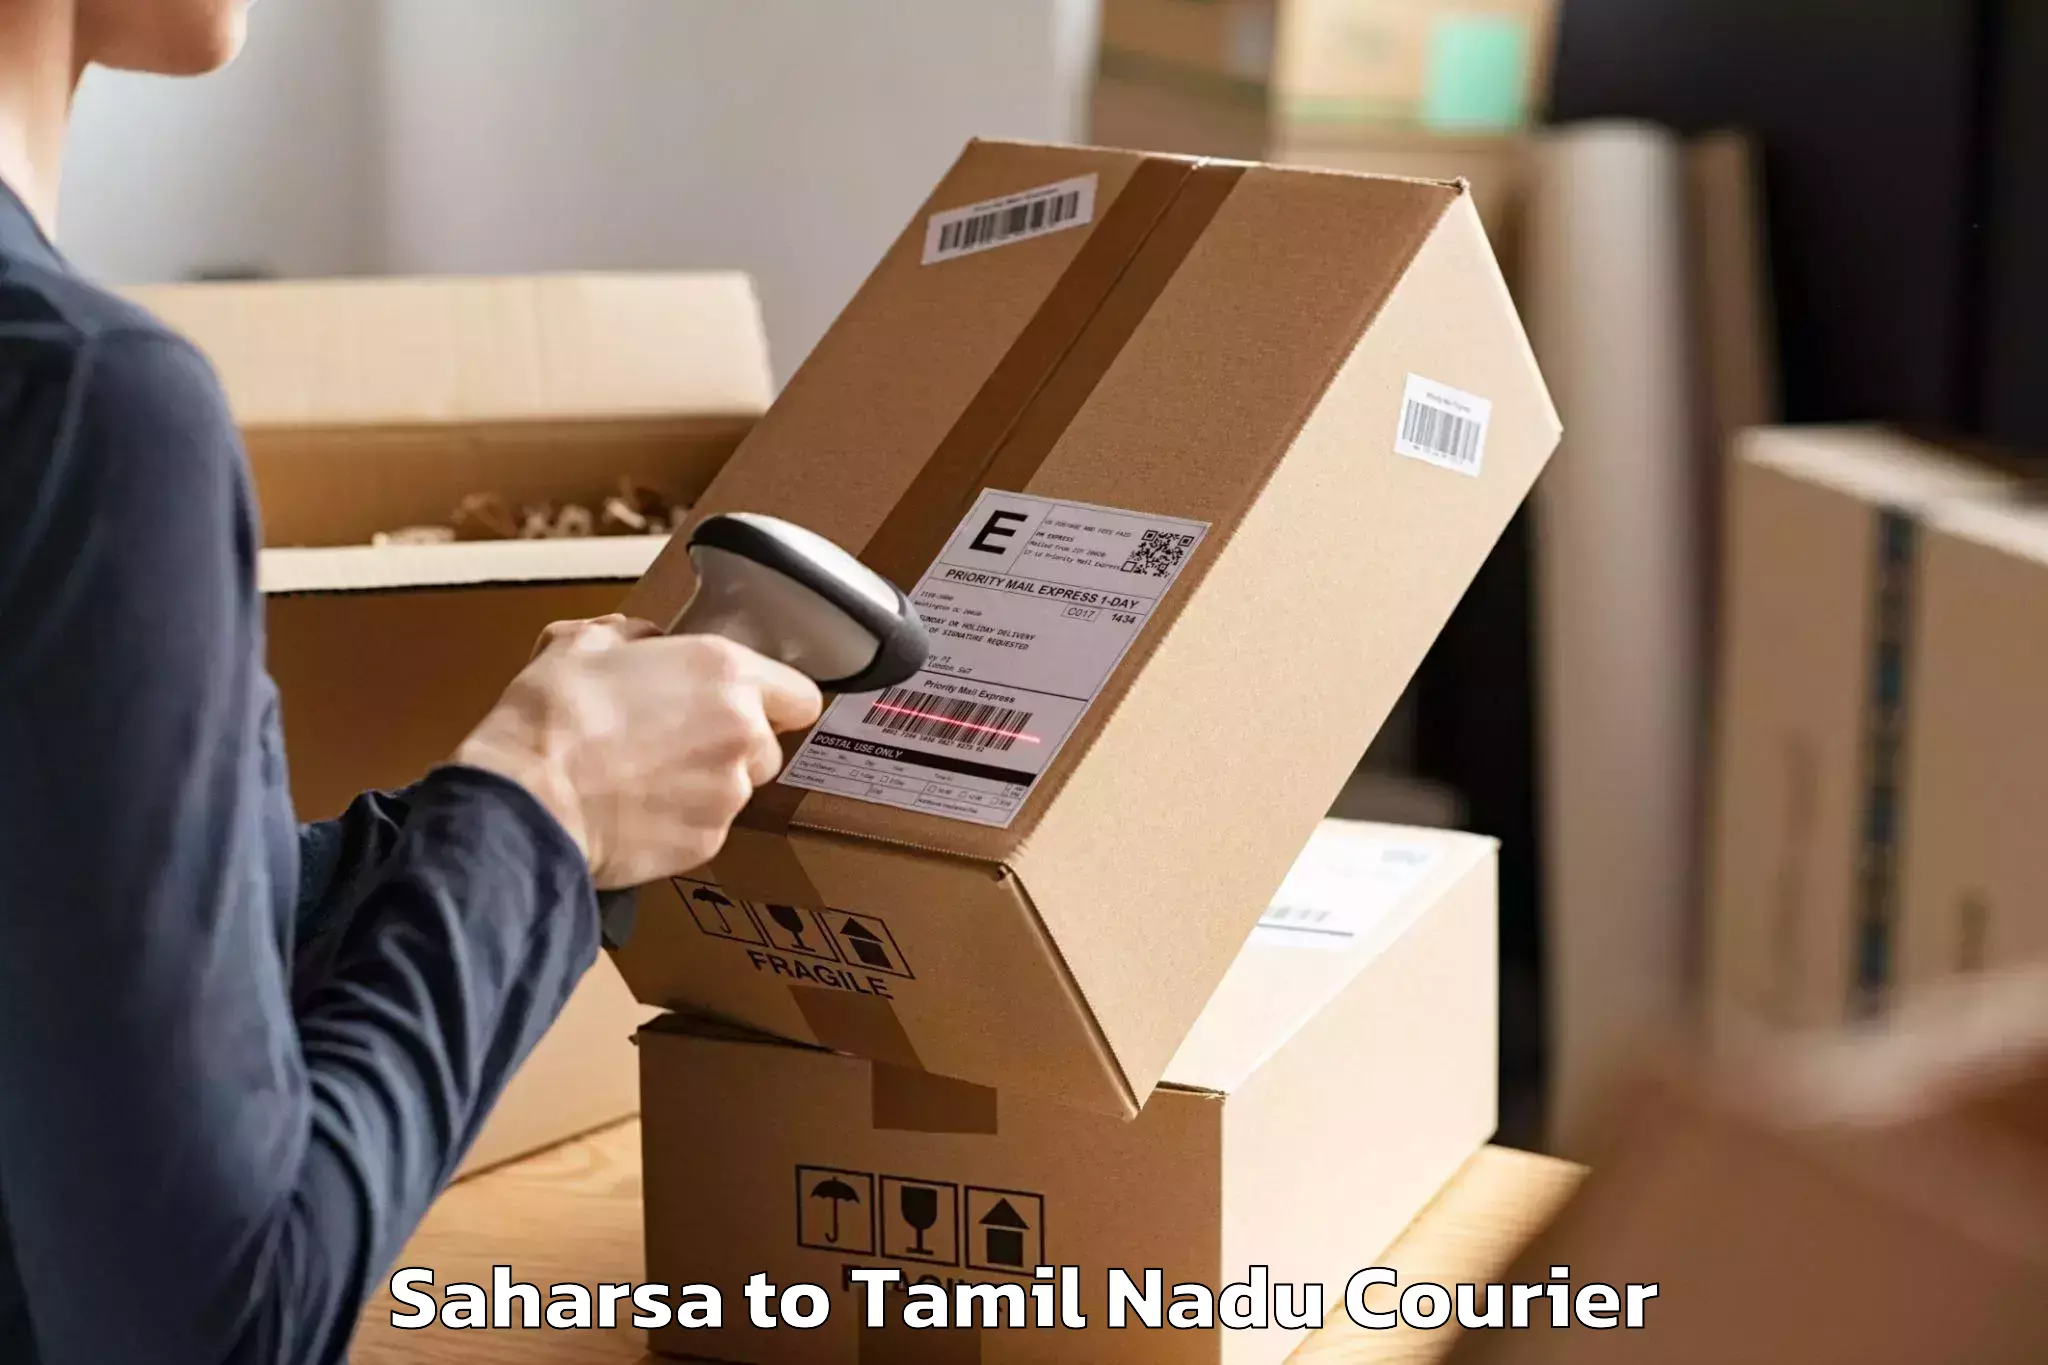 Reliable movers Saharsa to Sivaganga